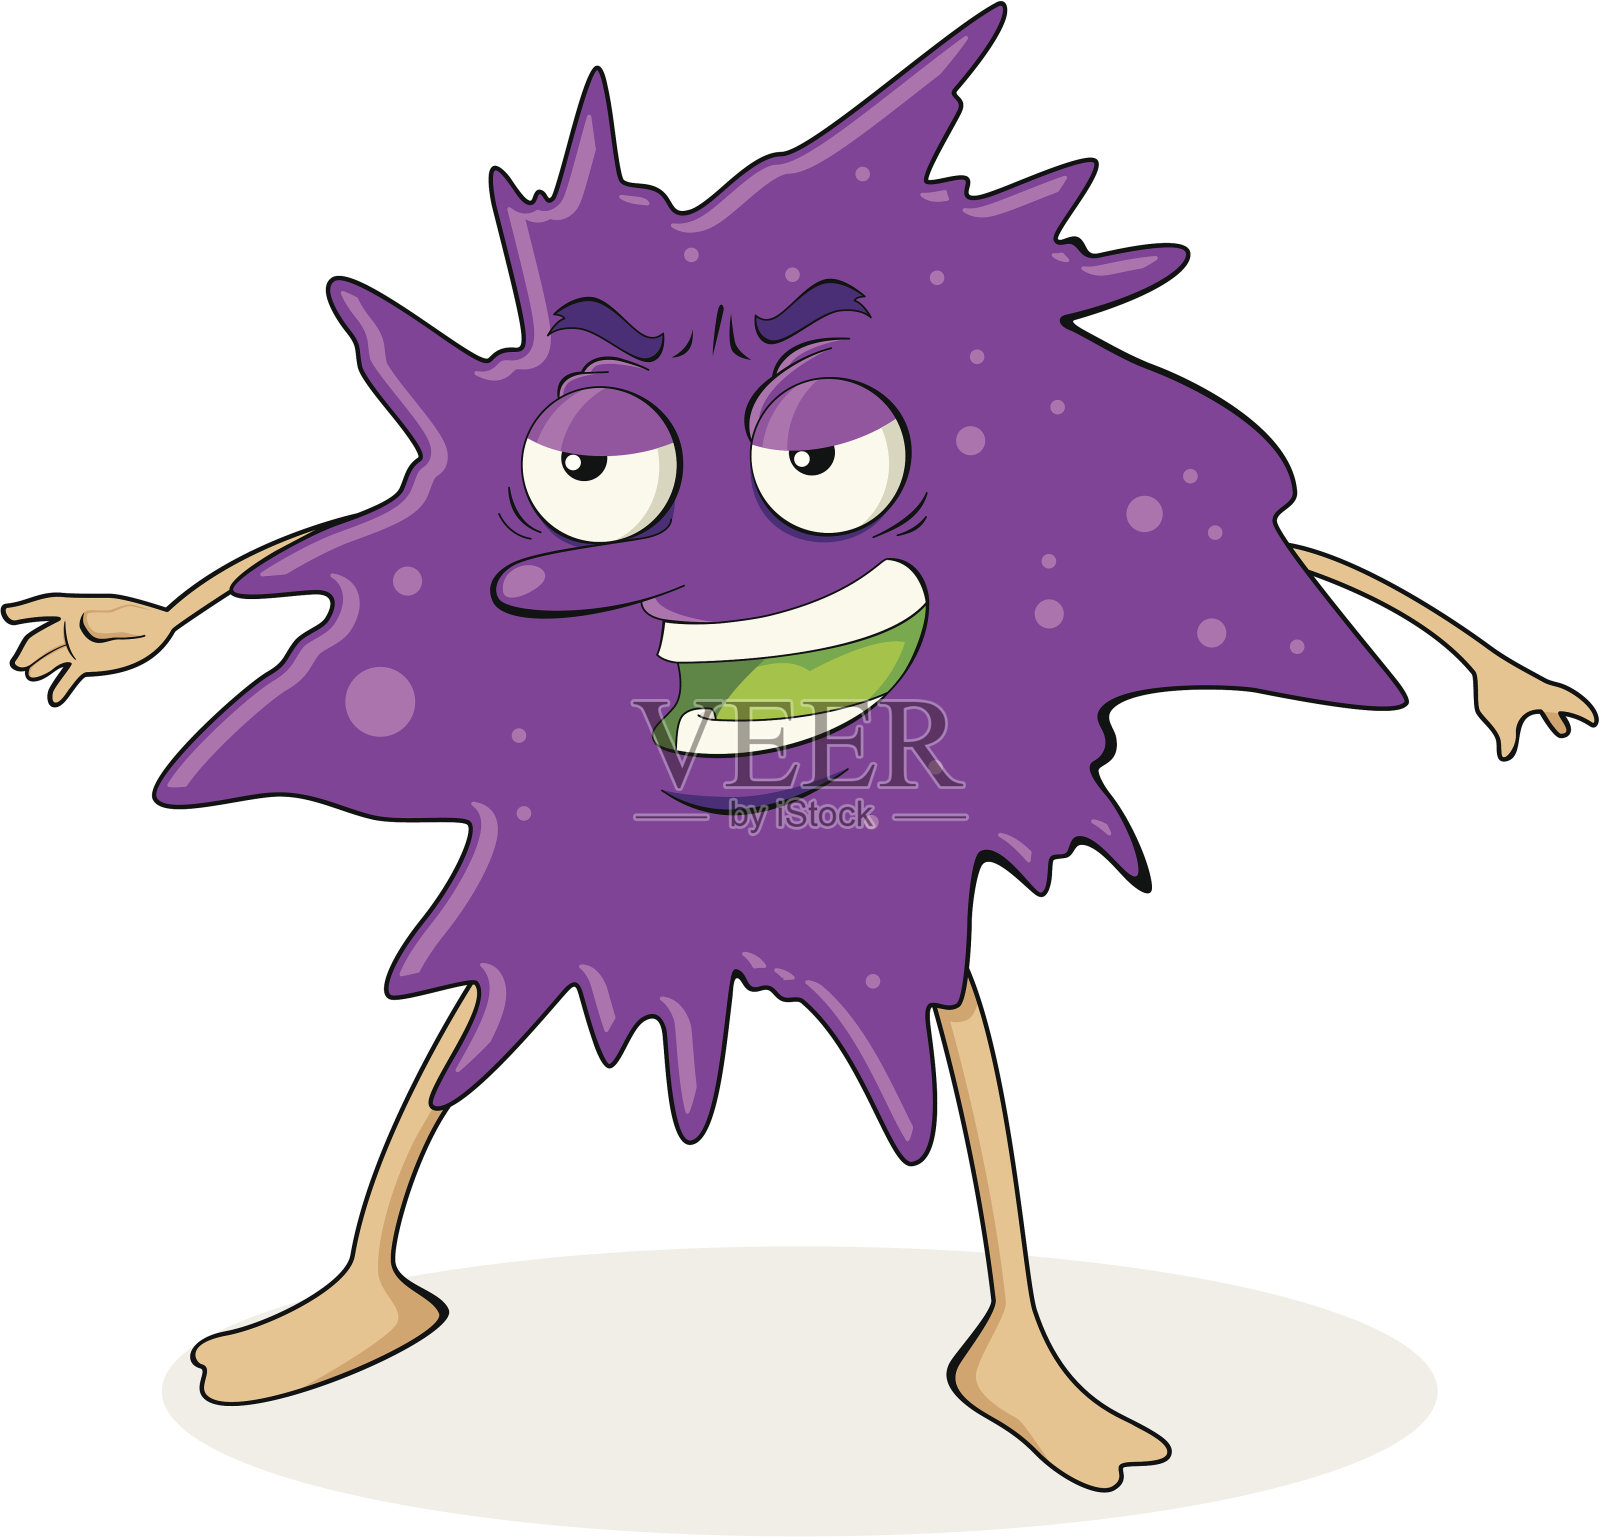 病毒细菌紫色插画图片素材